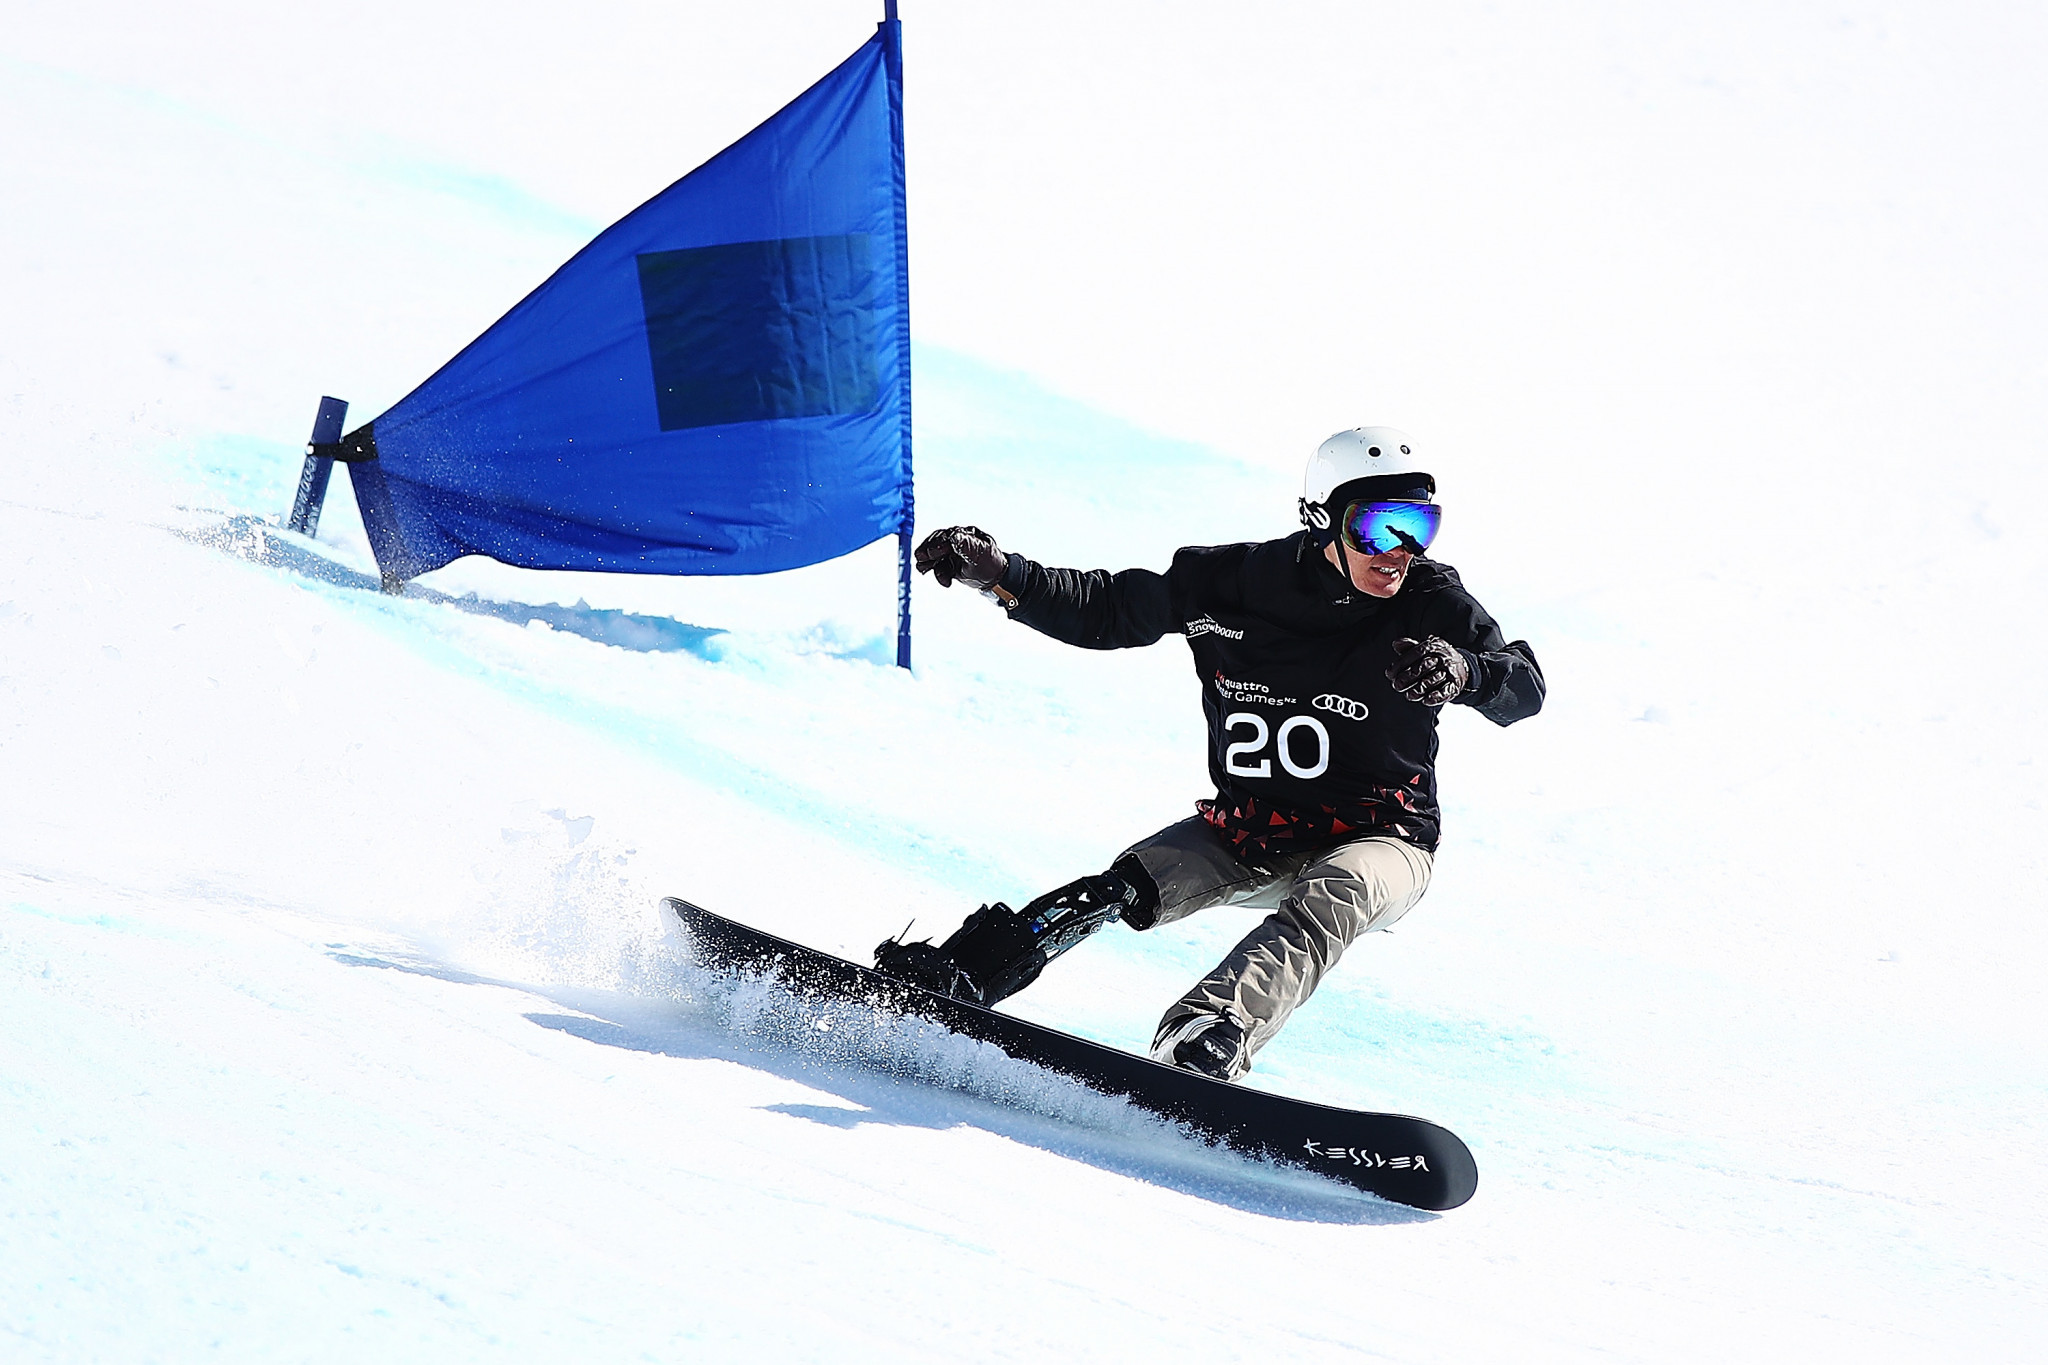 Le para-snowboard fera également partie des Championnats du monde des sports de paranimation © Getty Images